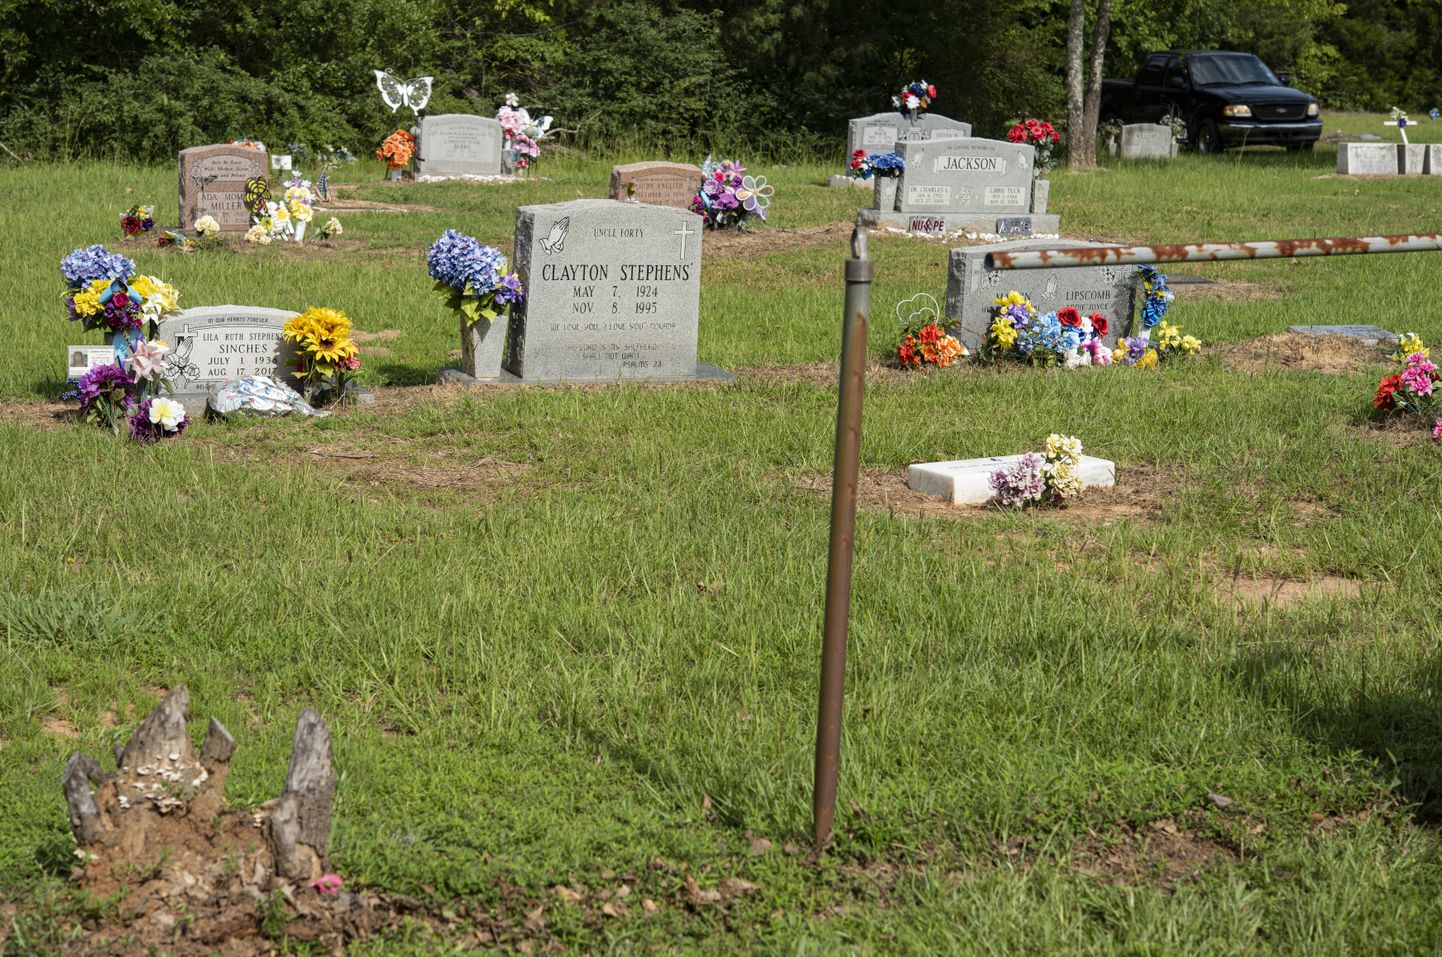 1940. aastate lõpus ja 1950. aastatel oli USA lõunaosariikides tavaline, et surnuaiad olid segregeeritud ning Texases asuv Mineola linn eemaldas alles läinud suvel tara, mis eraldas valgenahaliste ja mustanahaliste hauaplatse.